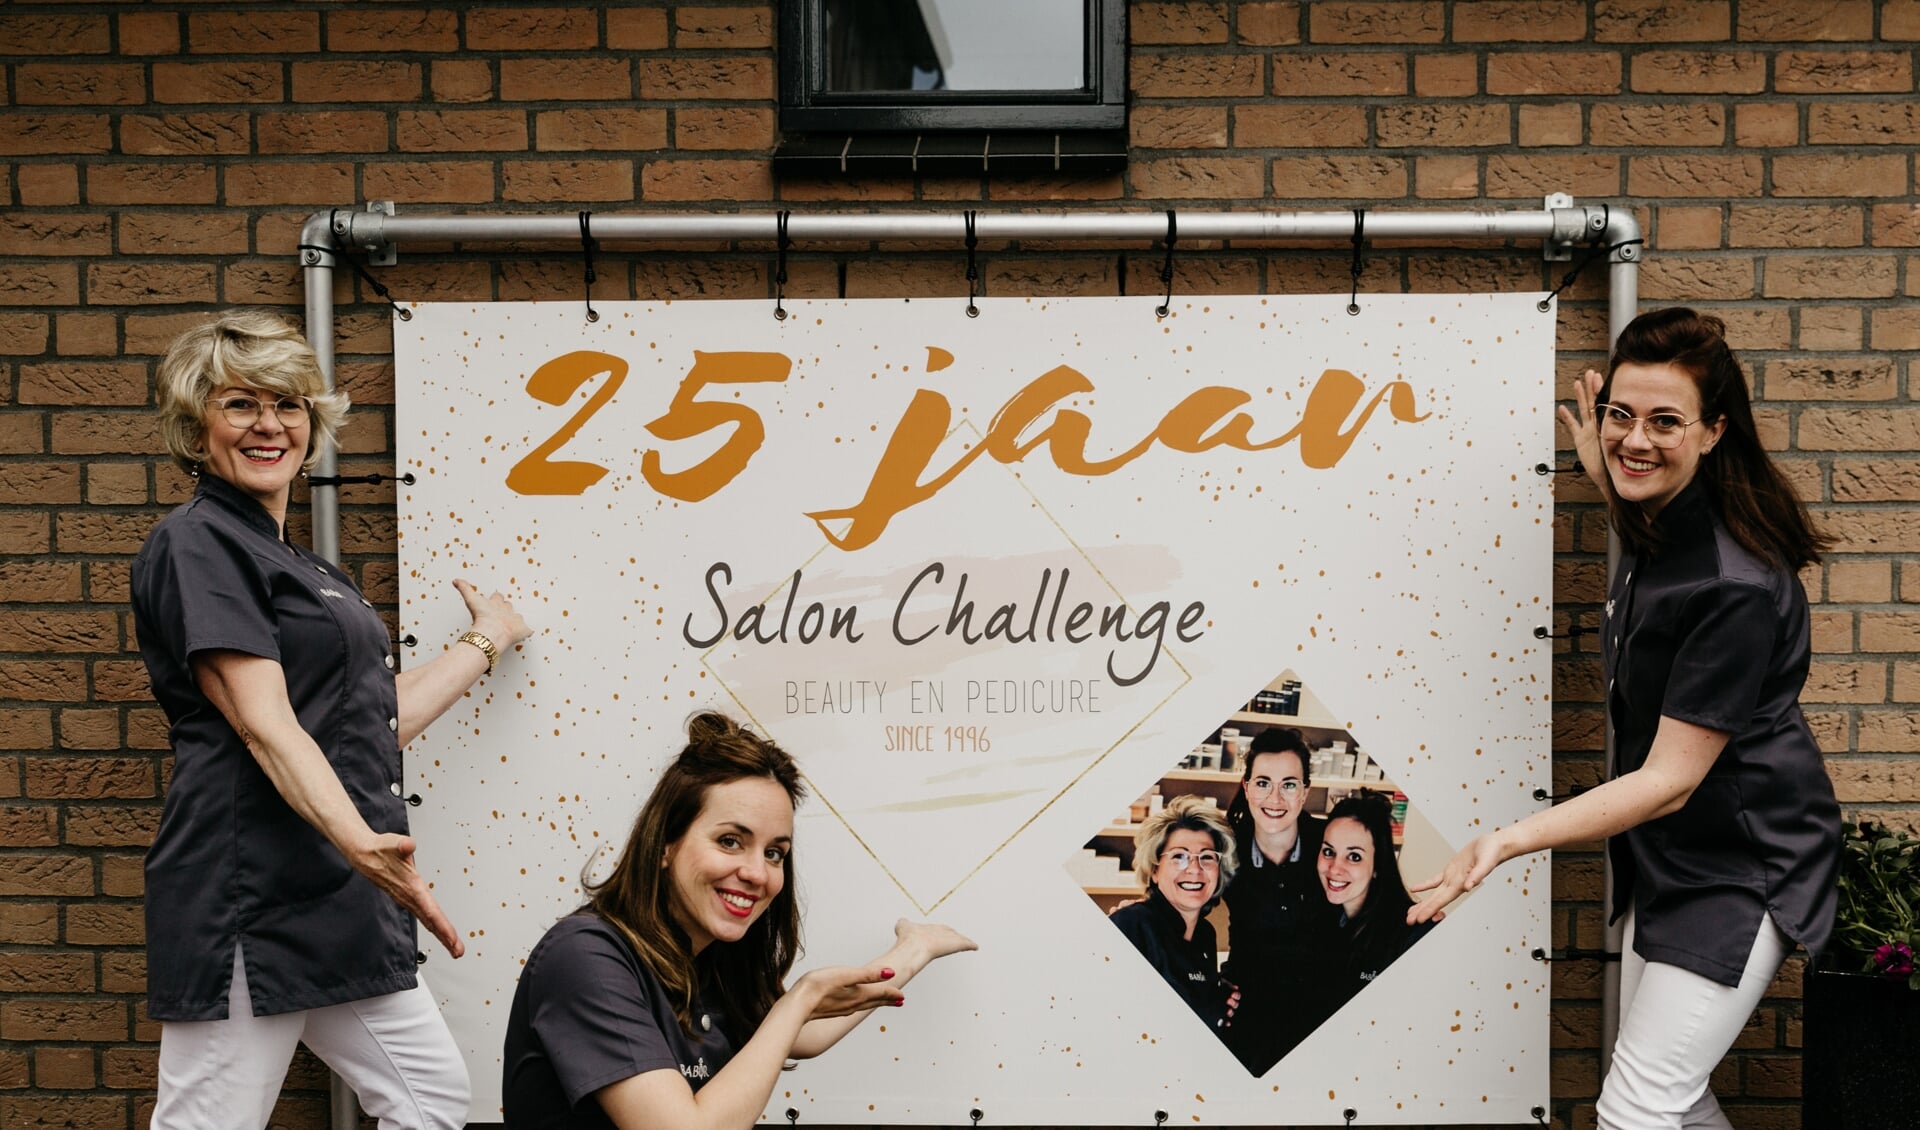 Het team van Salon Challenge: Jolanda van Veen, Lorean van Ballegooijen en Brenda Steeman.